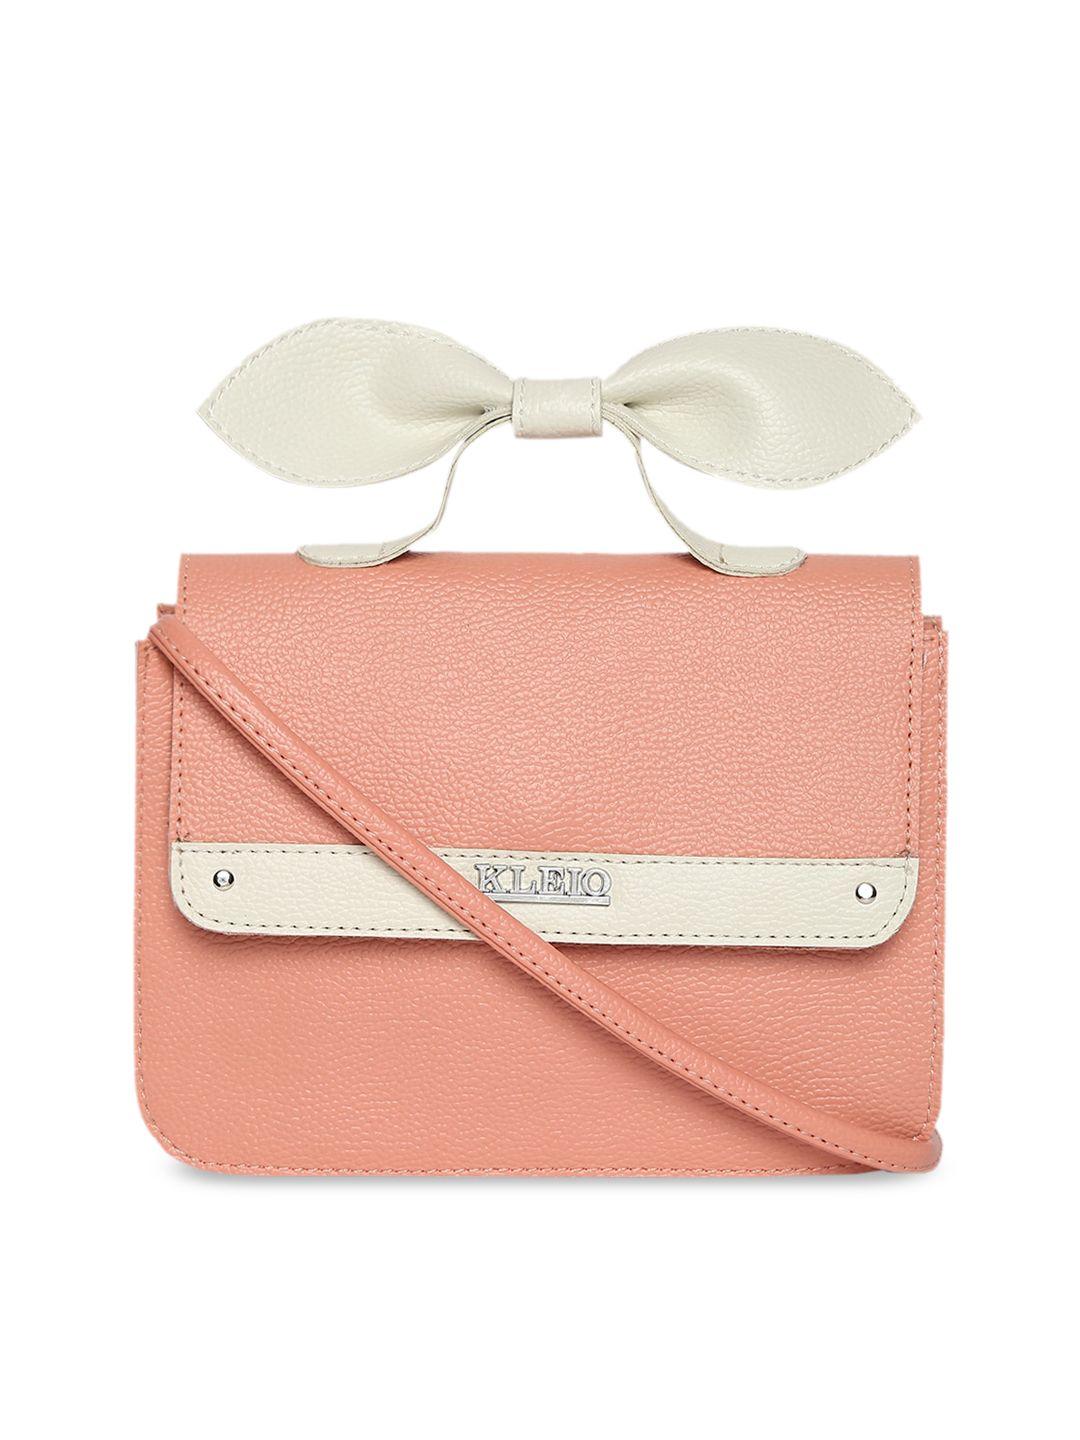 kleio peach-coloured solid satchel